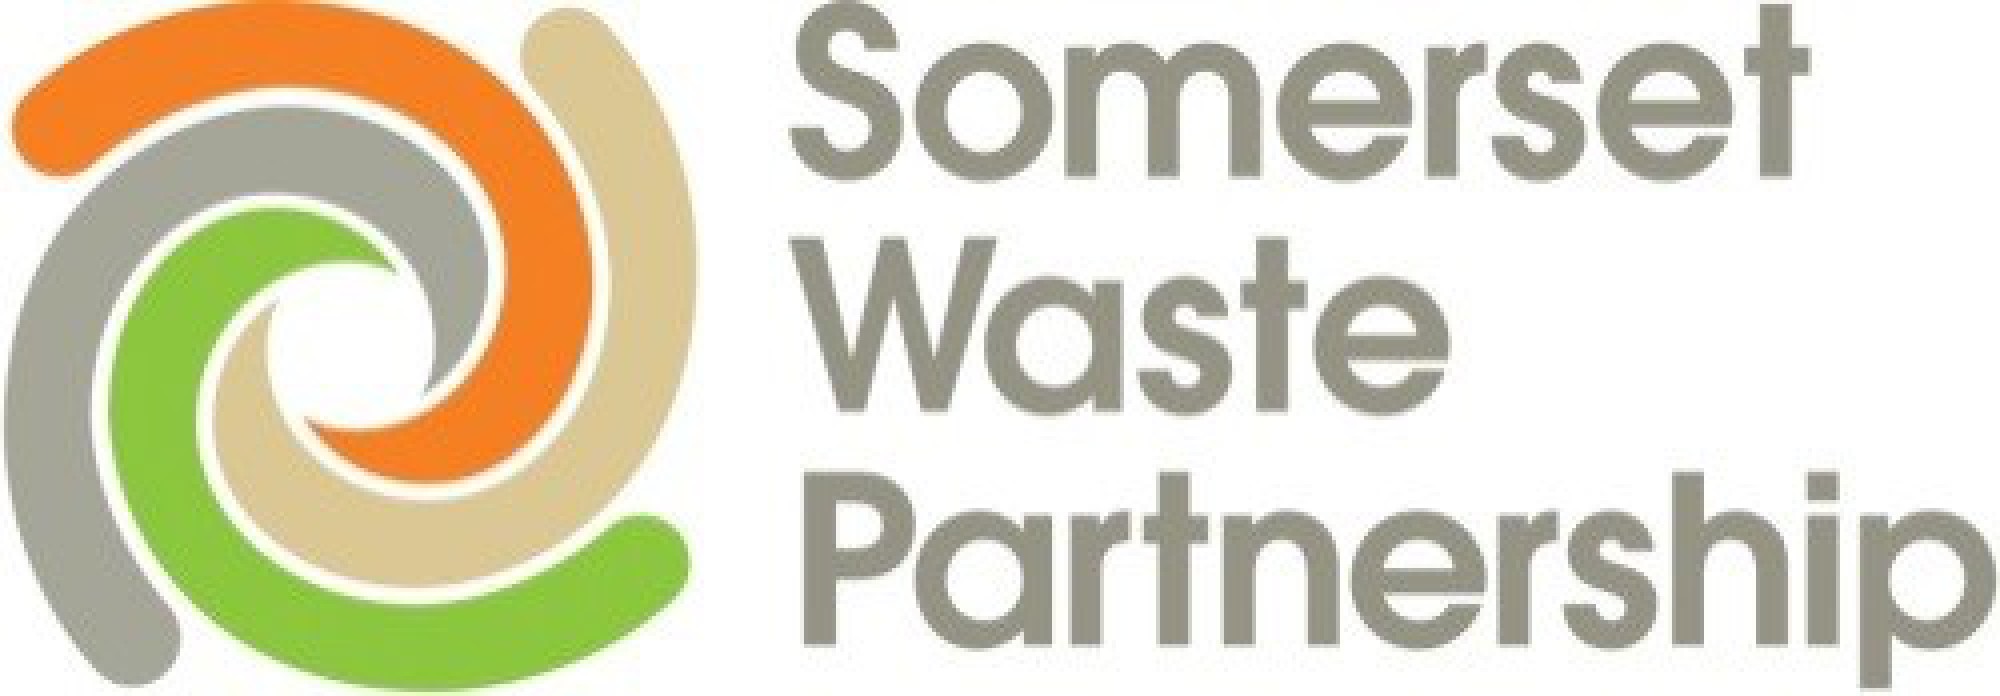 Somerset Waste Partnership